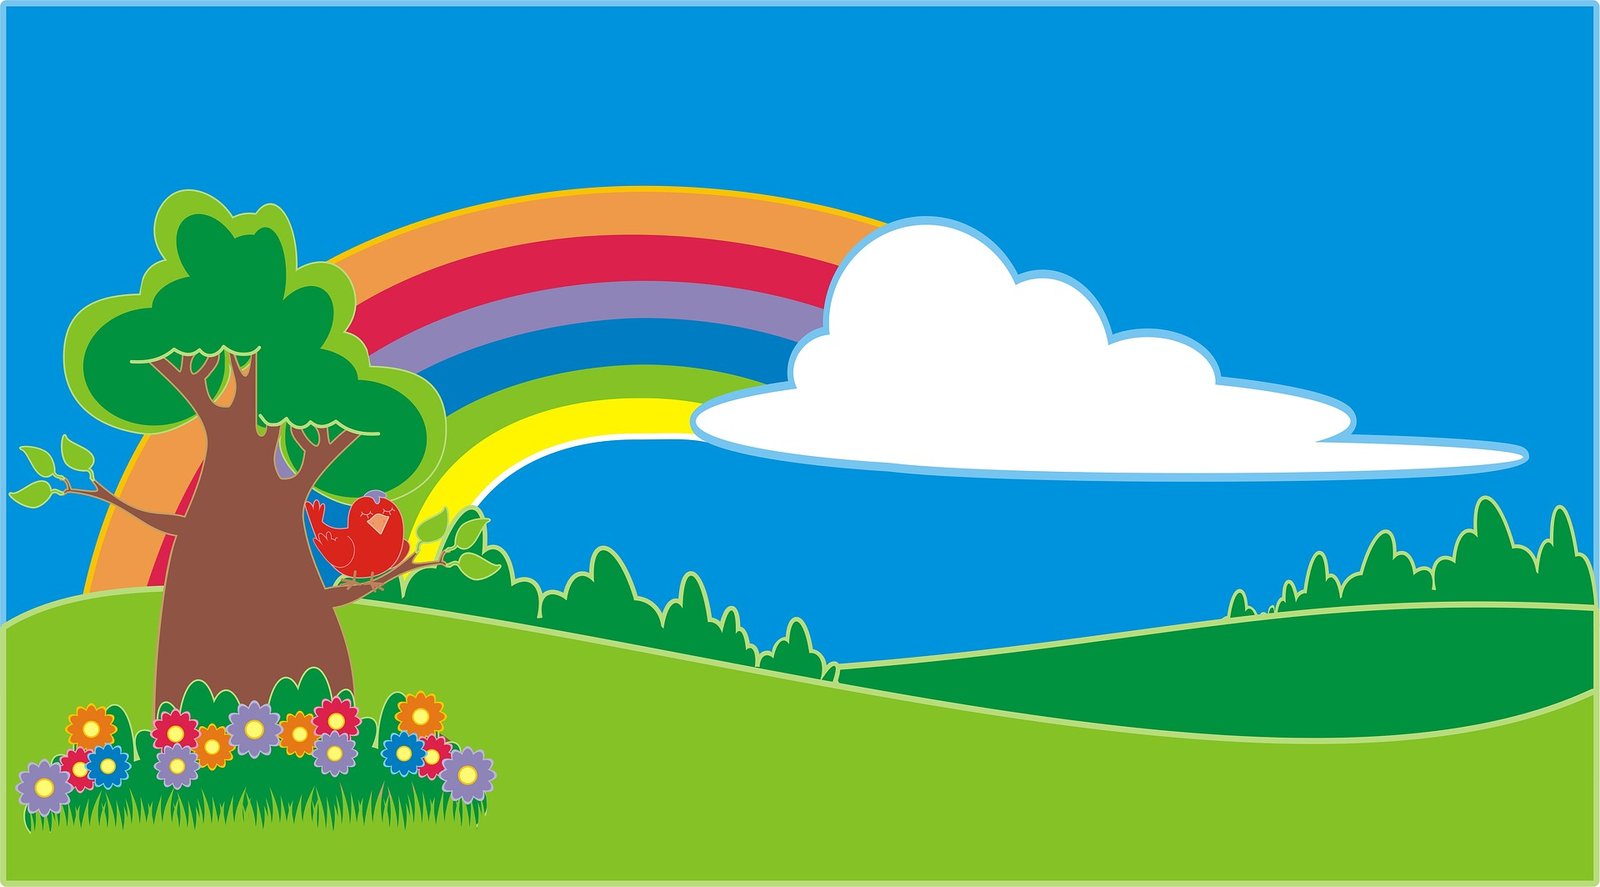 imagem do paraiso com arvore, passarinho, flores e arco iris pixabay.com